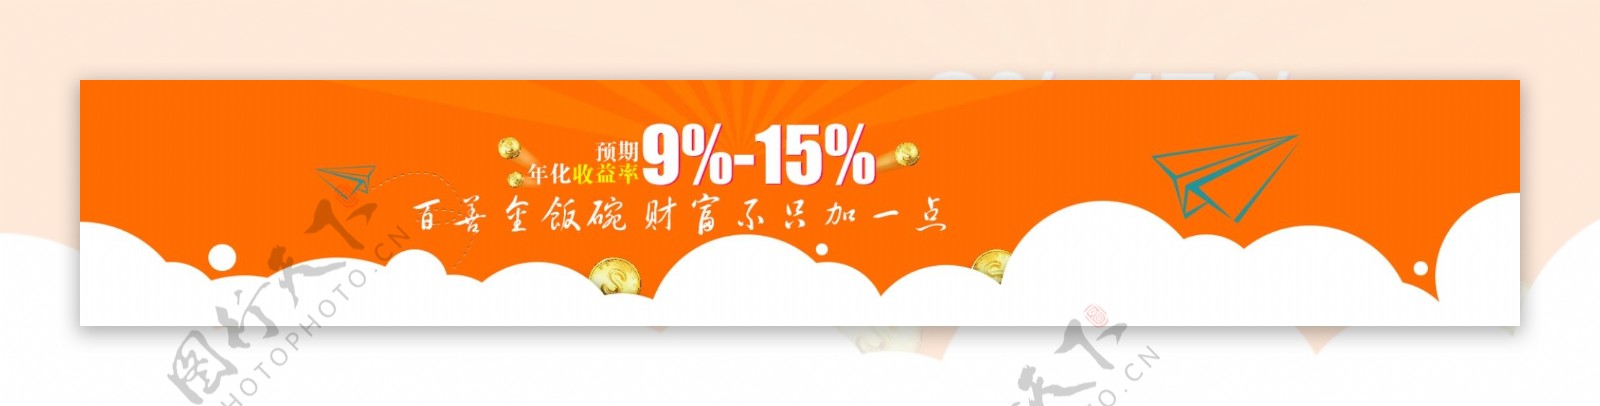 橙色背景金融首页banner设计